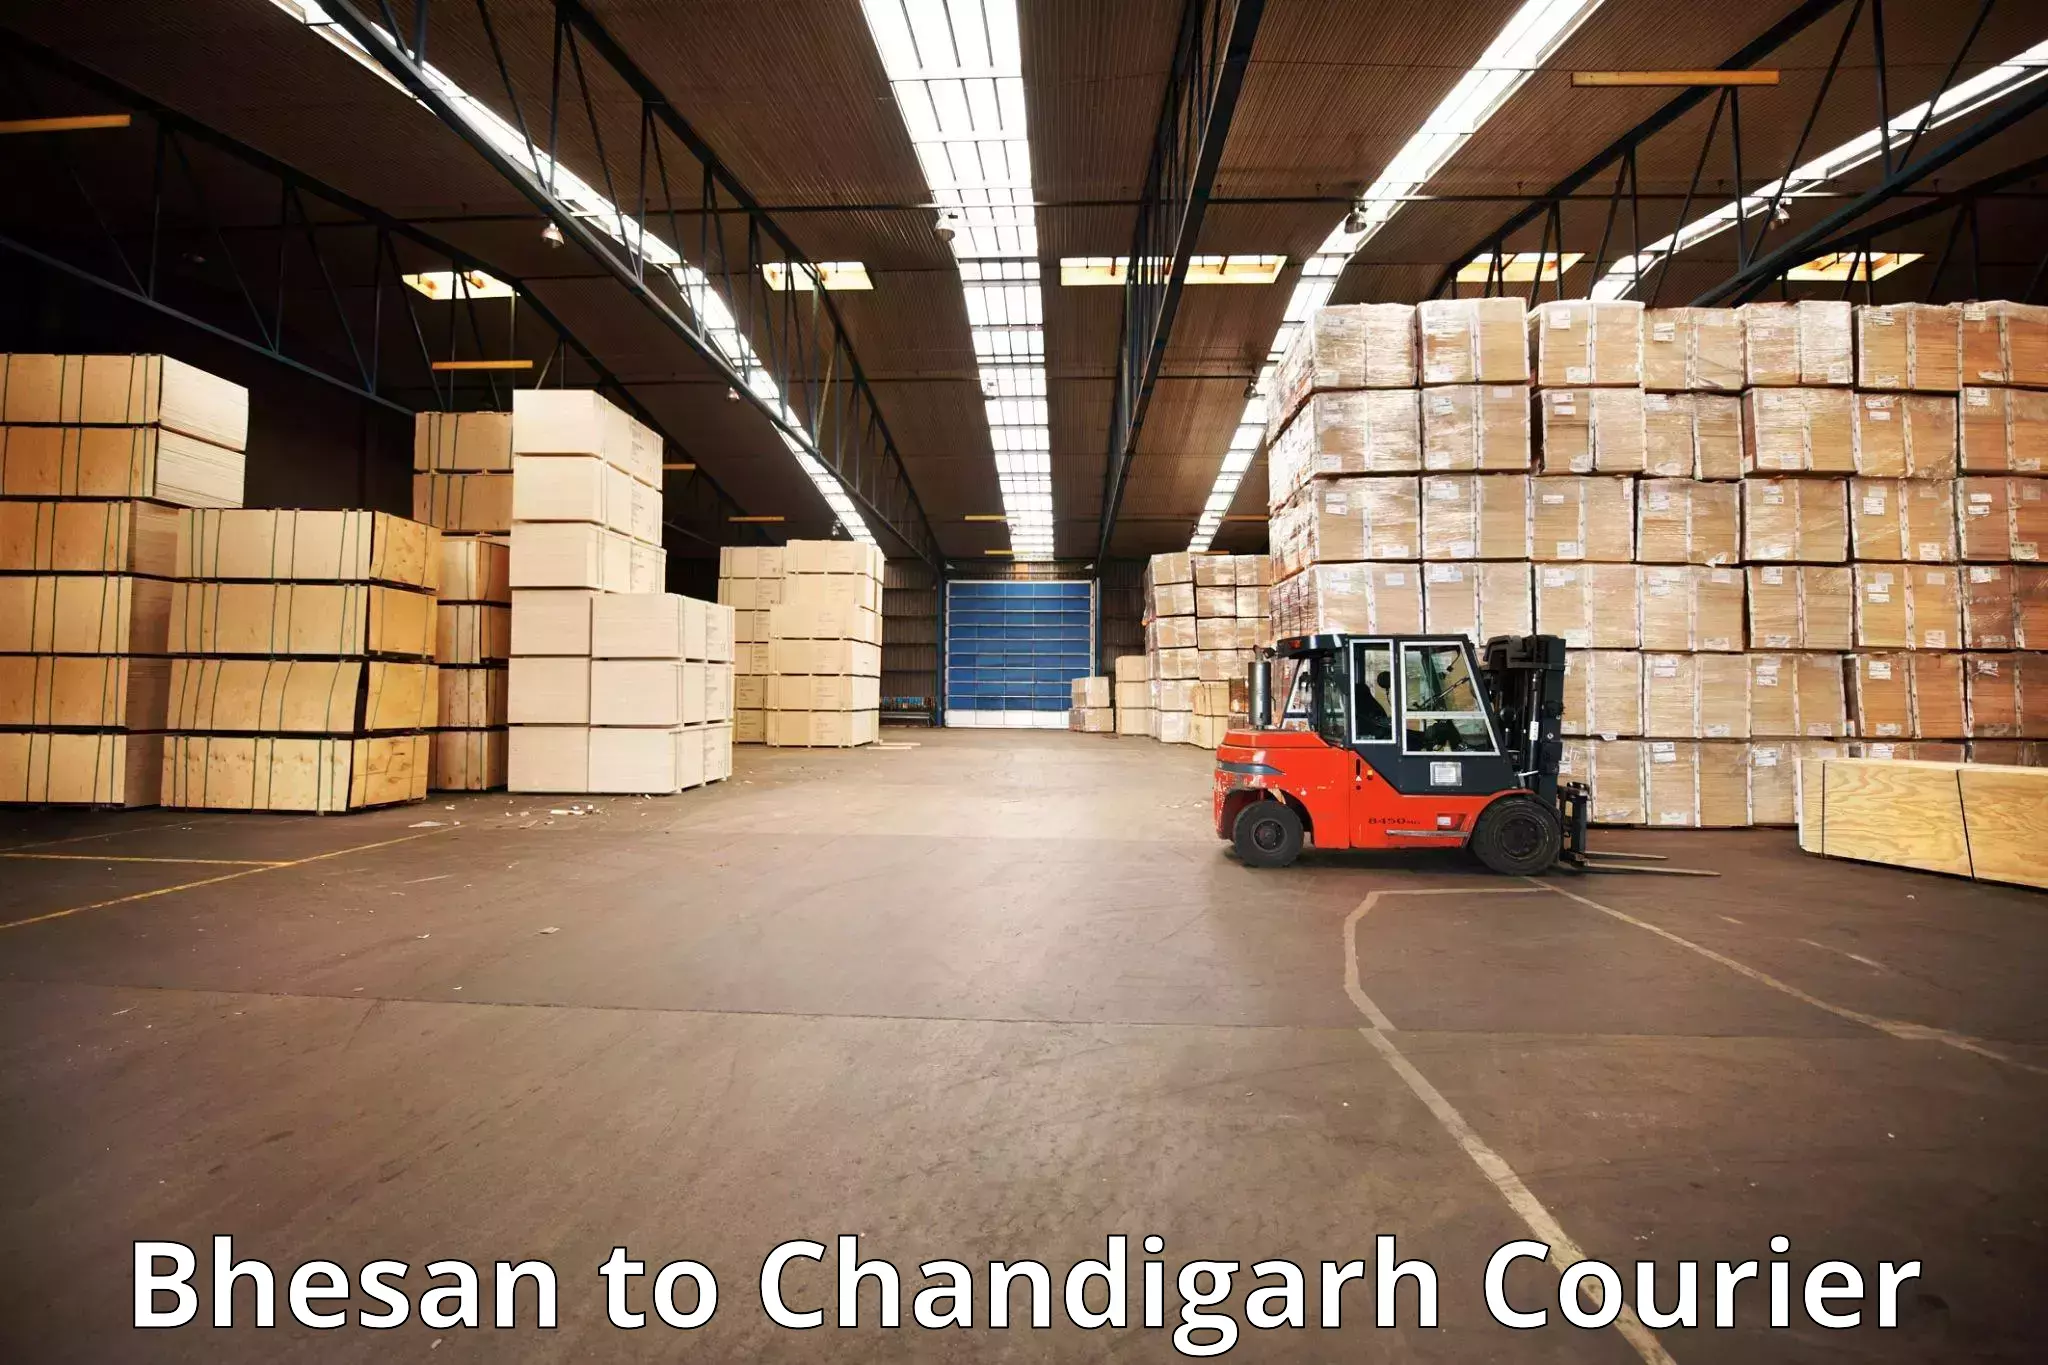 Baggage transport scheduler Bhesan to Chandigarh